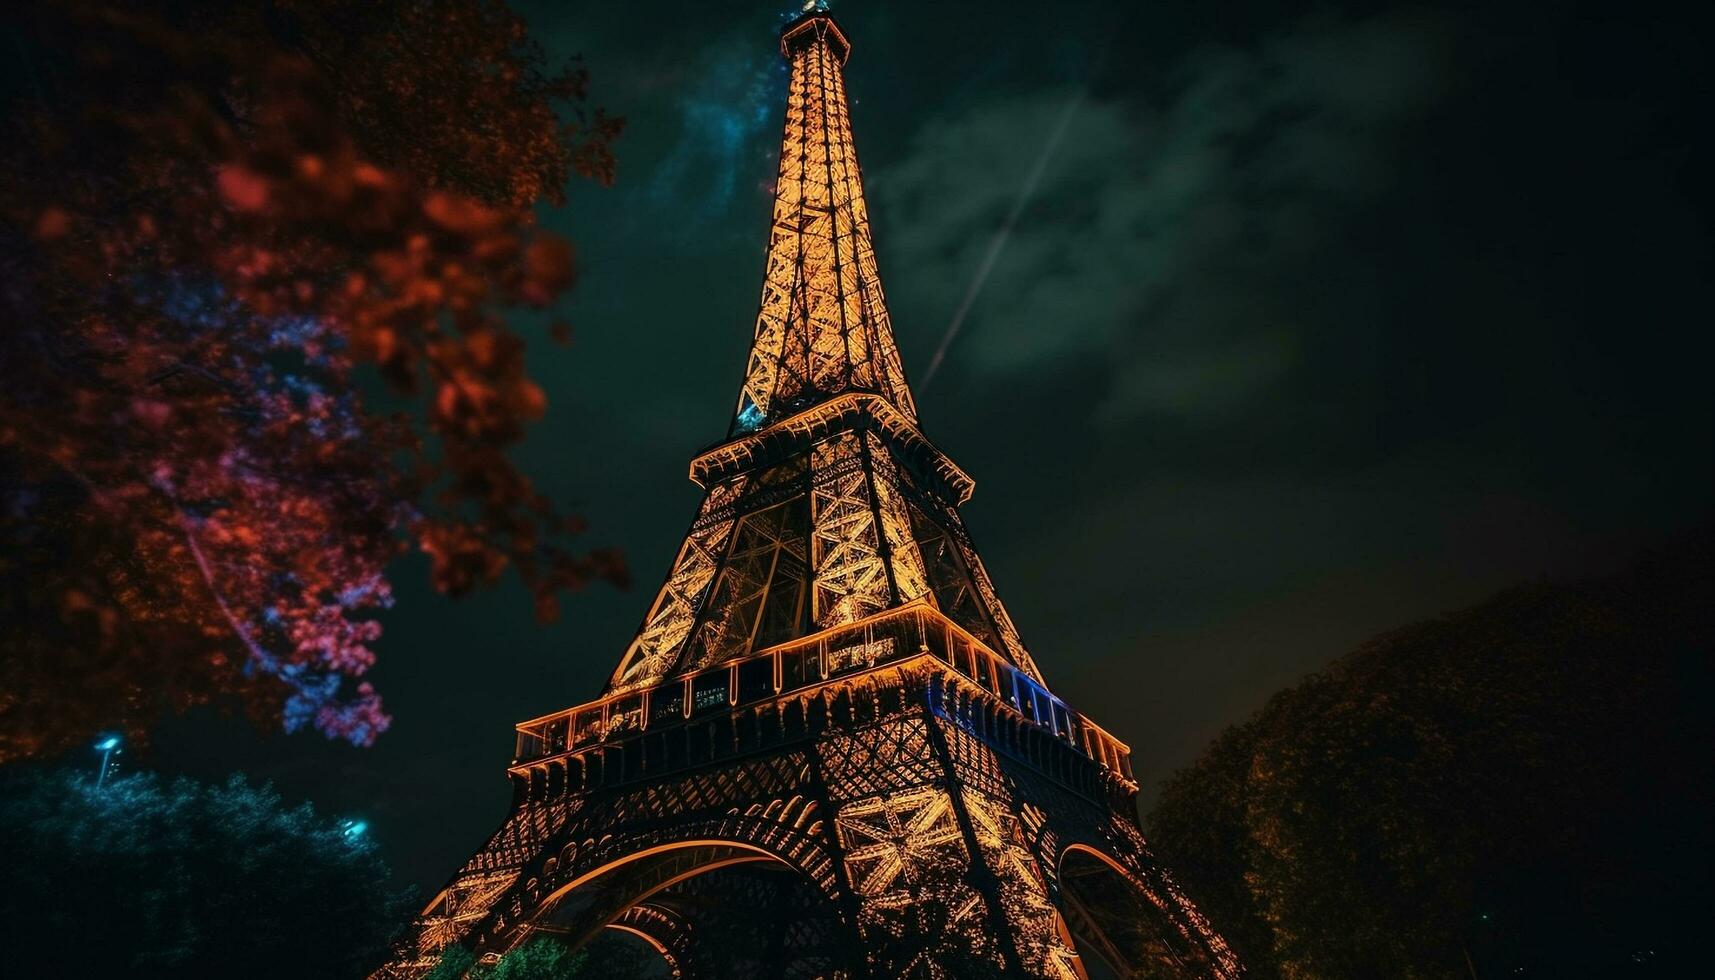 Illuminated architecture, majestic skyline, historic national landmark generated by AI photo